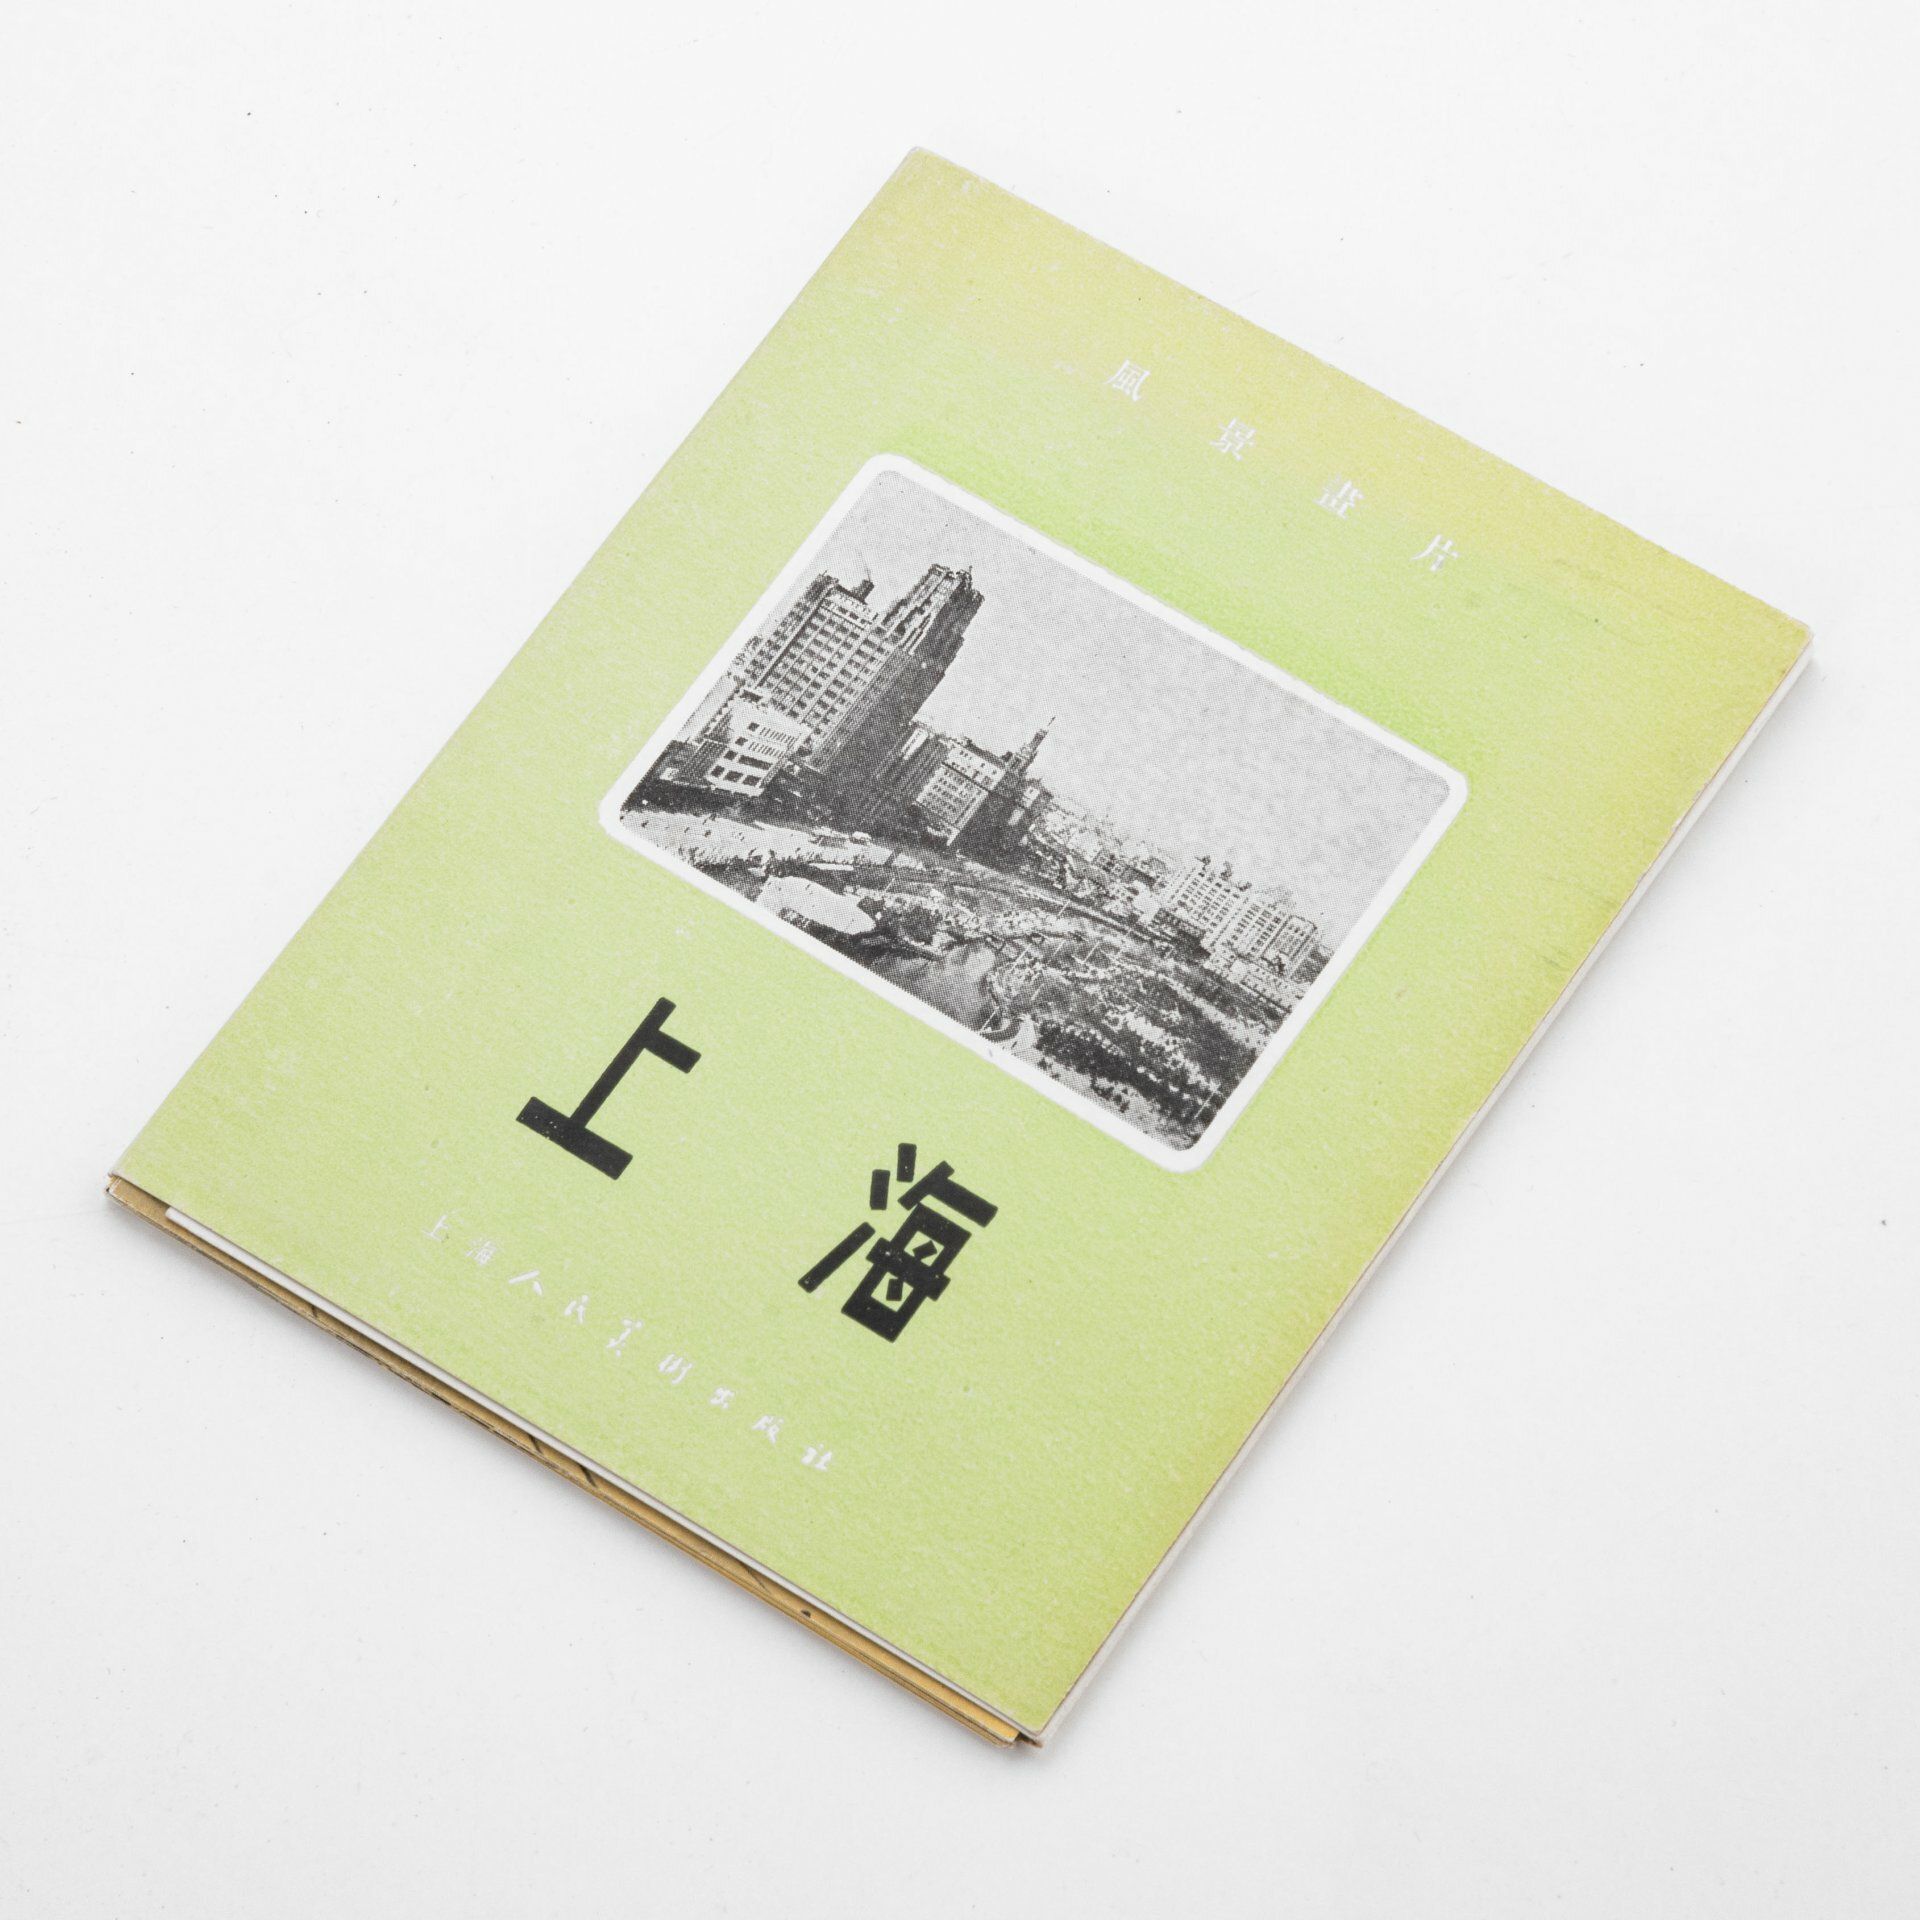 Набор открыток с видами Шанхая на китайском языке (12 шт.), бумага, печать, Китай